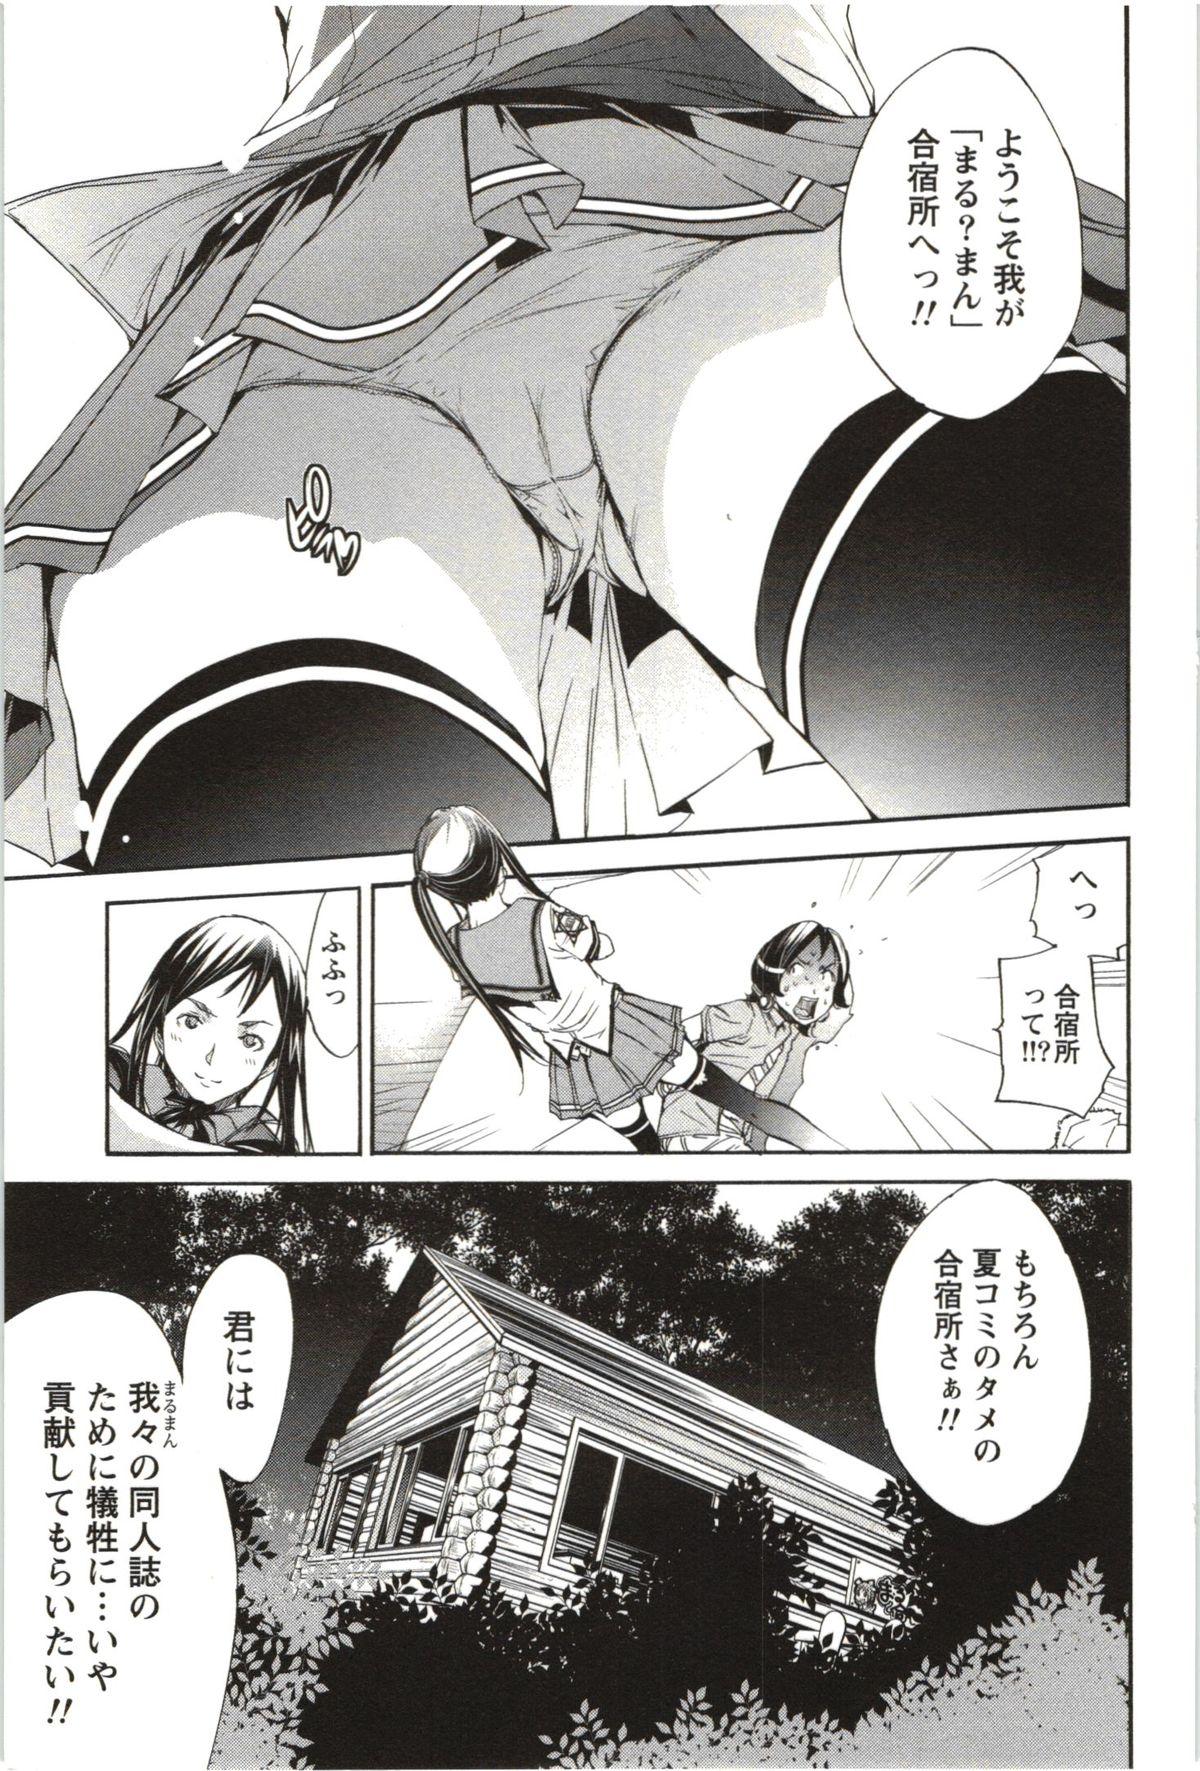 Camwhore [Kentarou] Maruman -Marude Manga no You na Heroine-tachi- Pinoy - Page 10